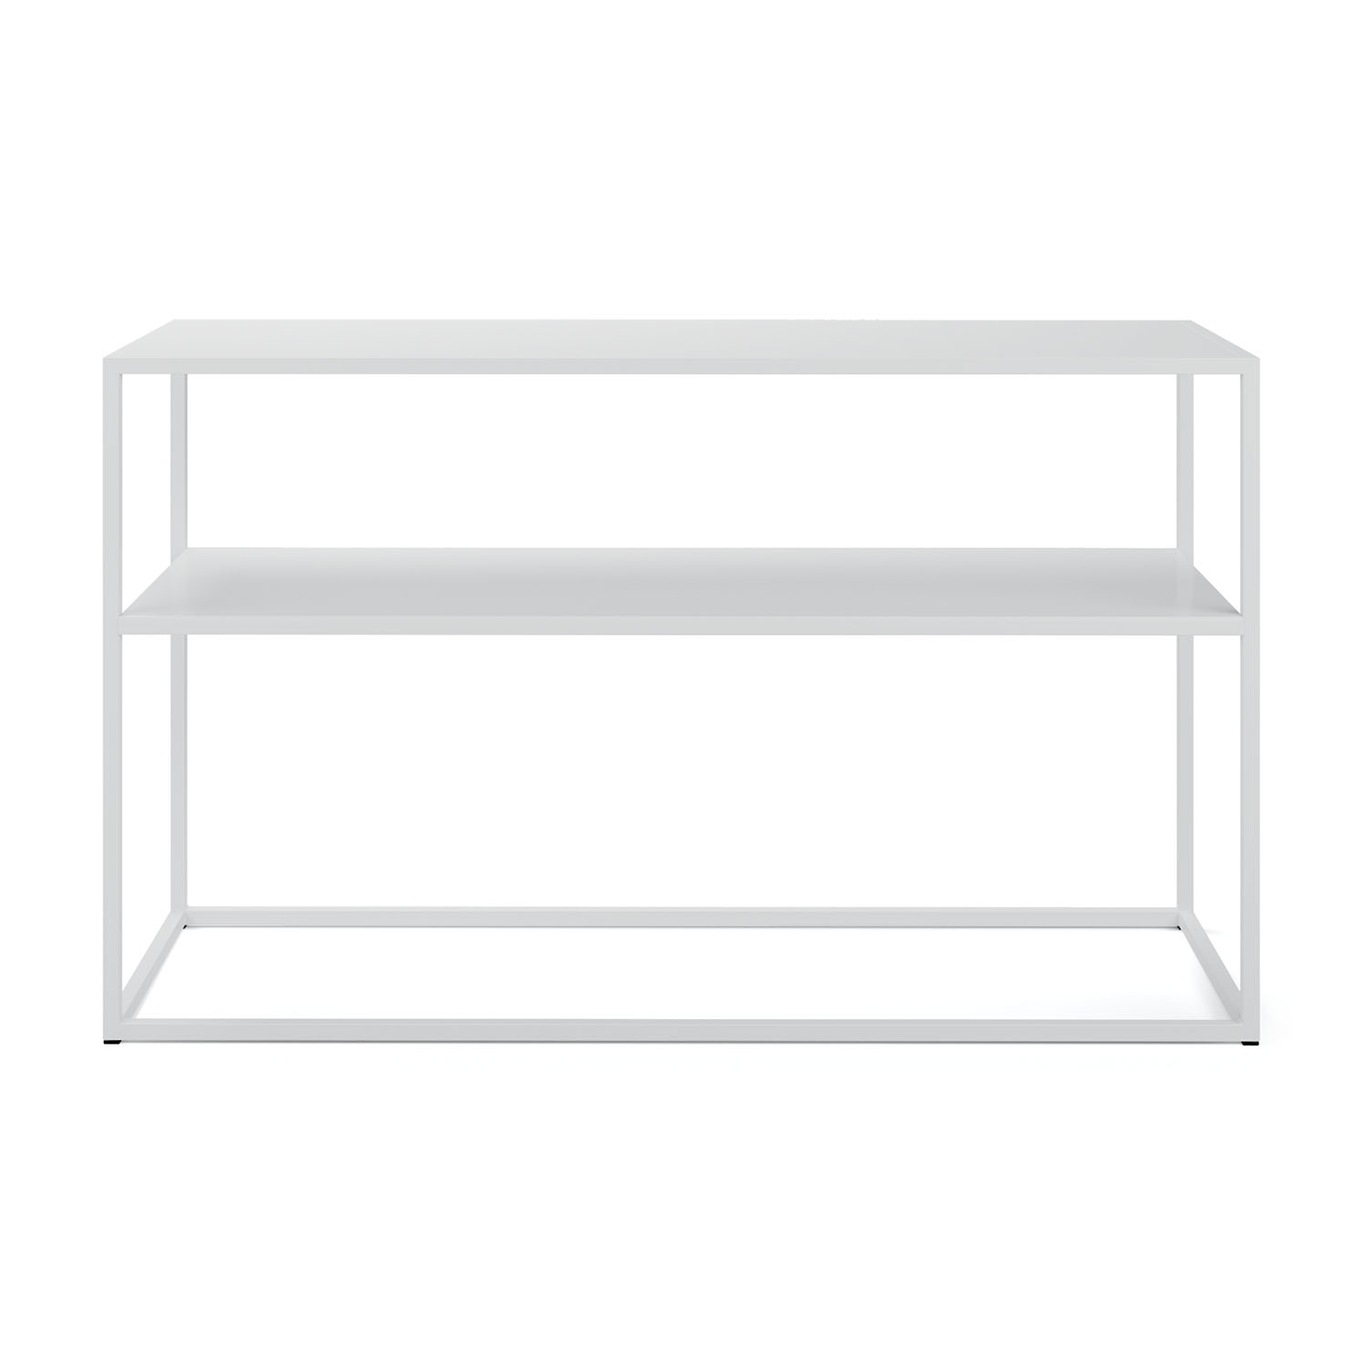 Sideboard Marvelous, 105x62 cm Skænk 62x105 cm, Hvid